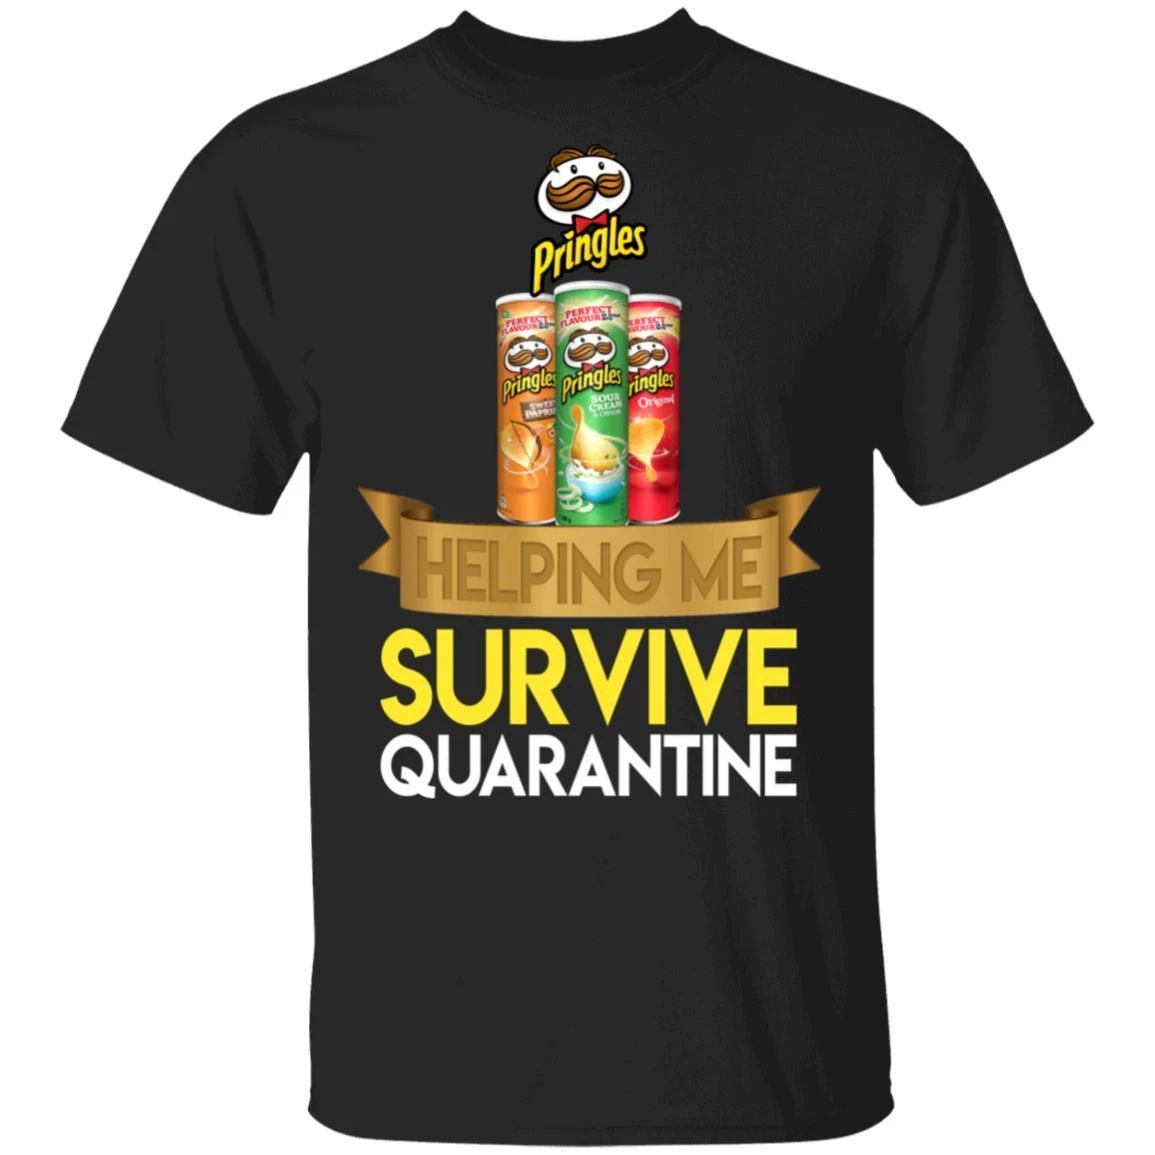 Pringles Helping Me Survive Quarantine T-shirt